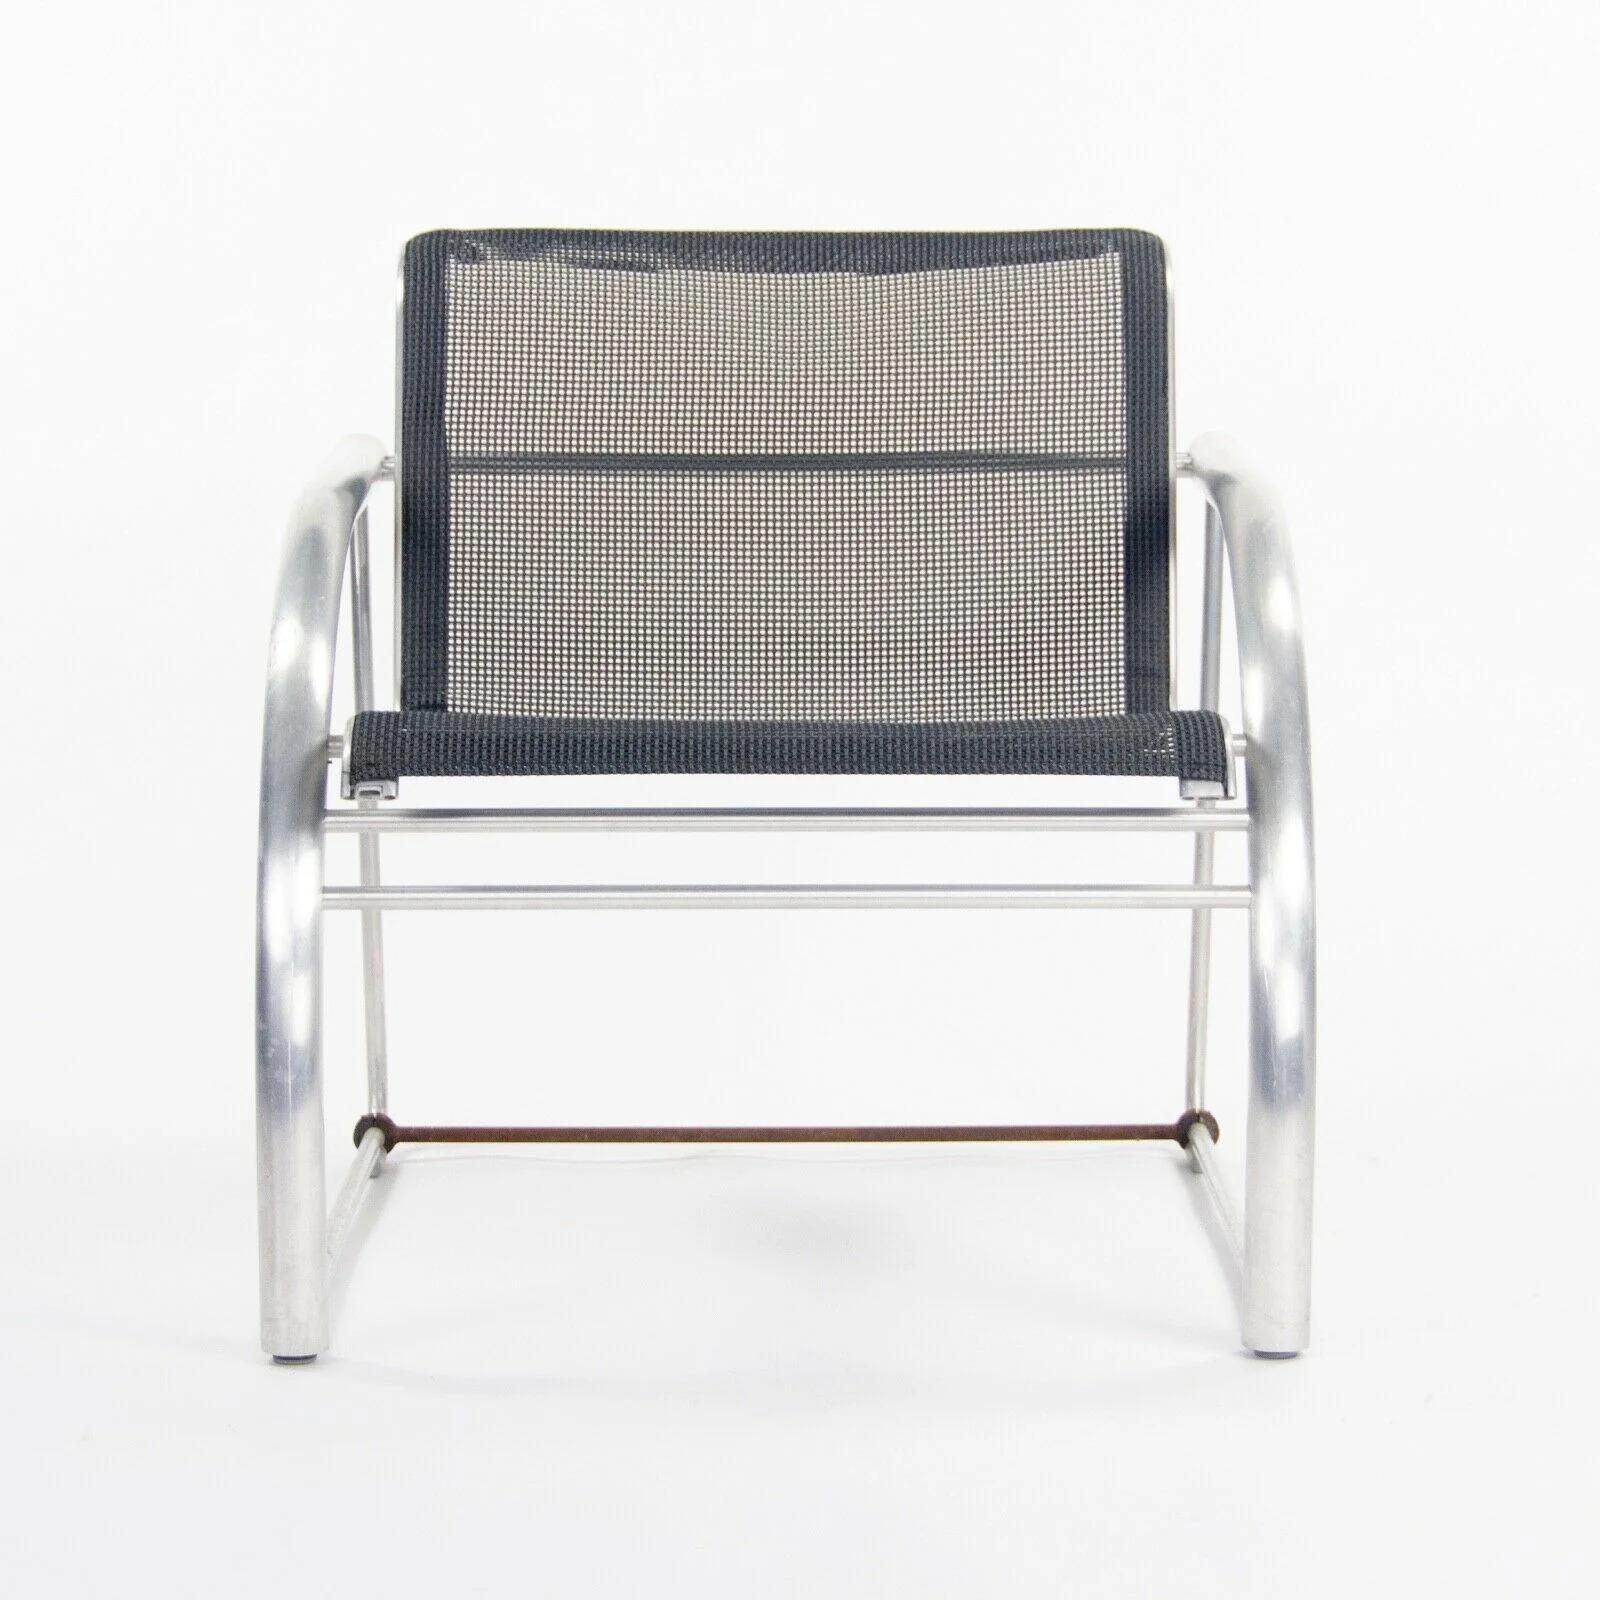 Nous proposons à la vente un prototype de chaise de salon en aluminium de la Collection STEO 2011 de Richard Schultz, avec un revêtement en maille. Il s'agit d'un merveilleux et rare exemple de chaise de salon de la collection MATEO. Le cadre en